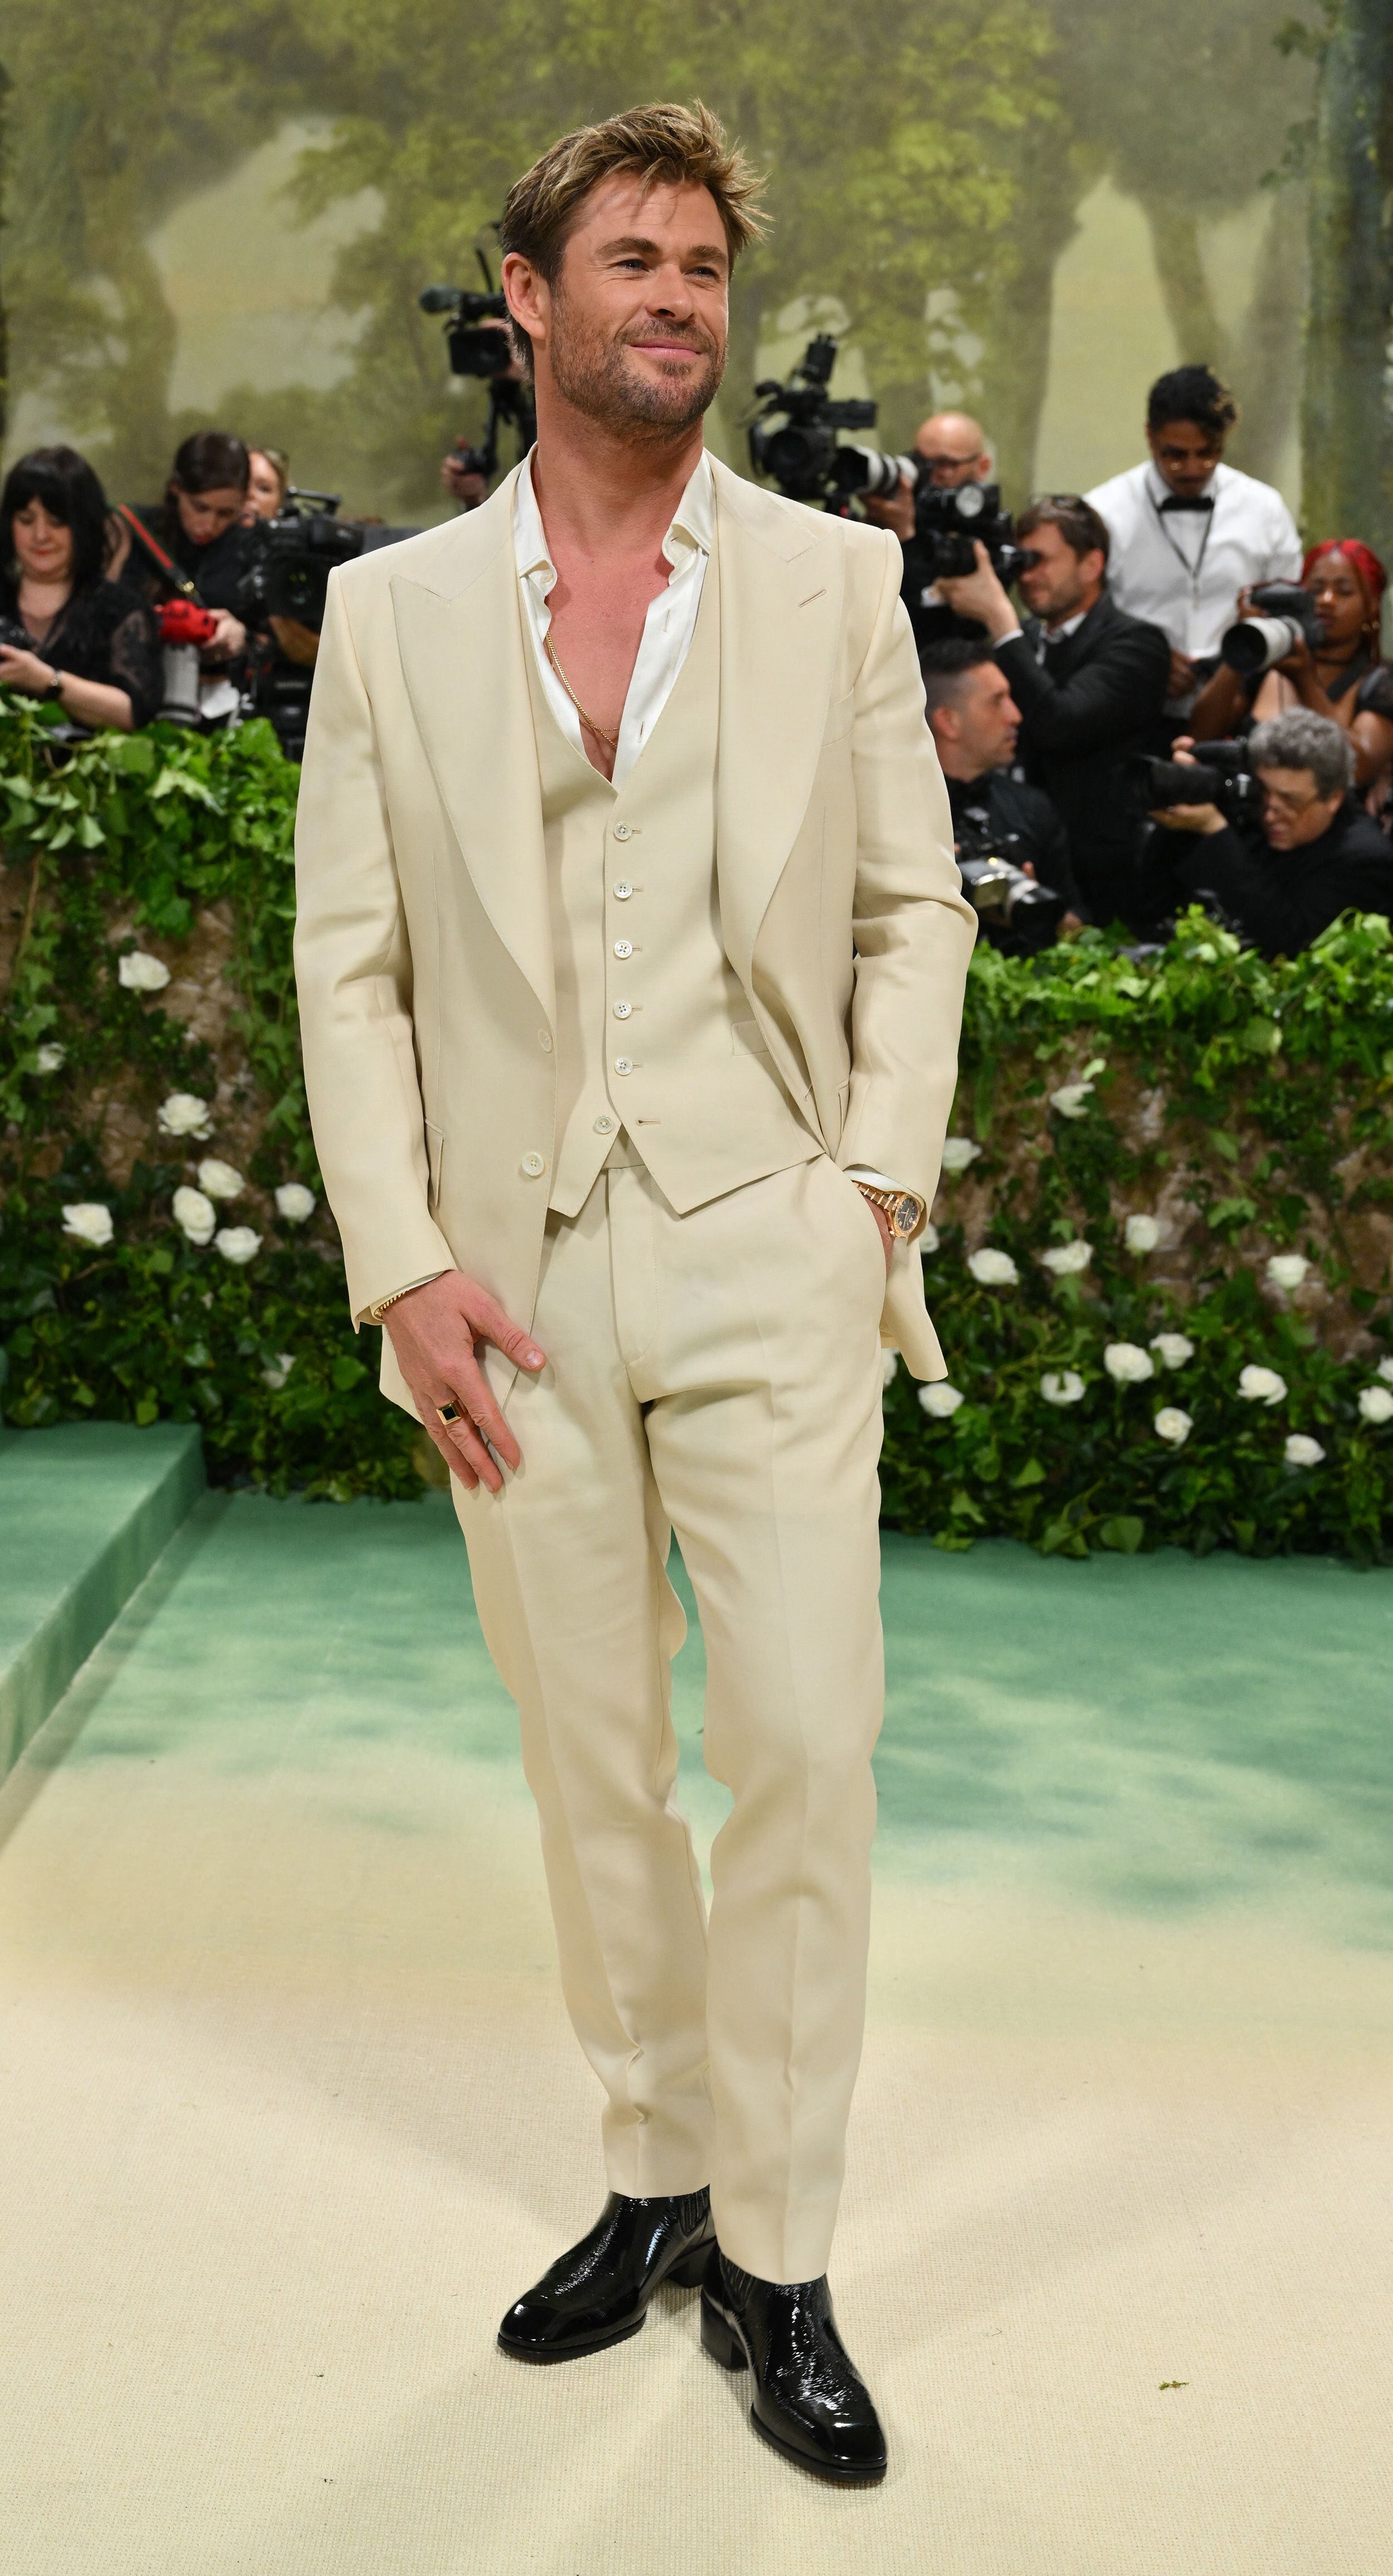 El actor australiano Chris Hemsworth conocido por su rol de Thor en las películas de Marvel, optó por un atuendo personalizado de Tom Ford. Llevaba un traje de tres piezas de lana en color crema a medida con botas de charol negro. En su muñeca, llevaba un reloj de oro rosa de Chopard.